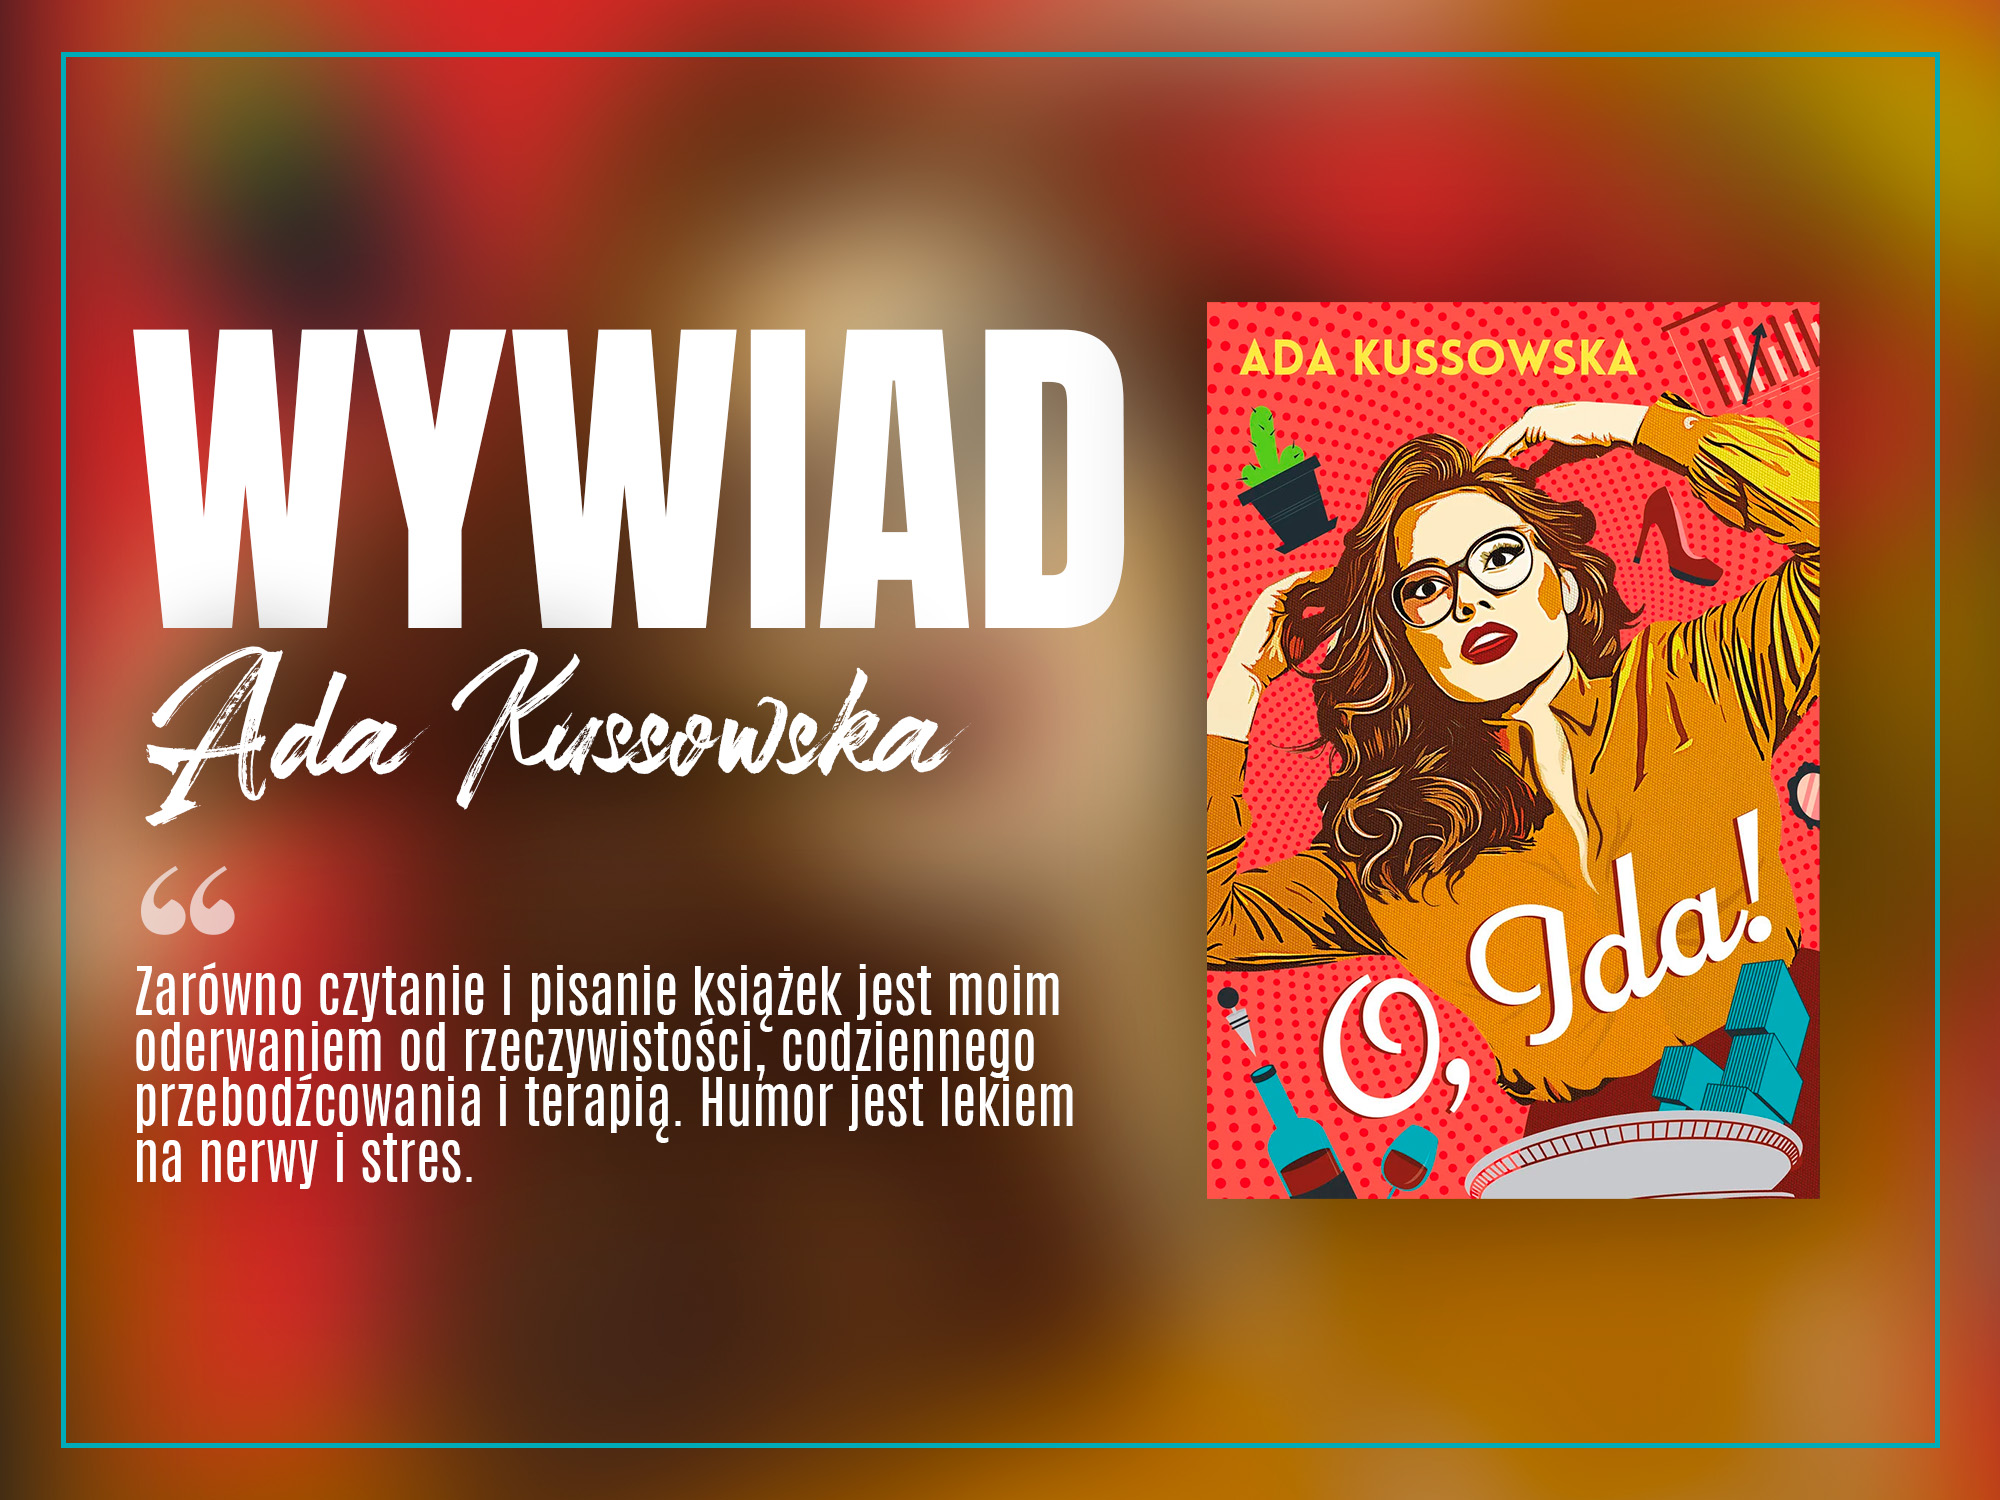 „O, Ida!” – rozmowa z autorką Adą Kussowską - zaczytanyksiazkoholik.pl